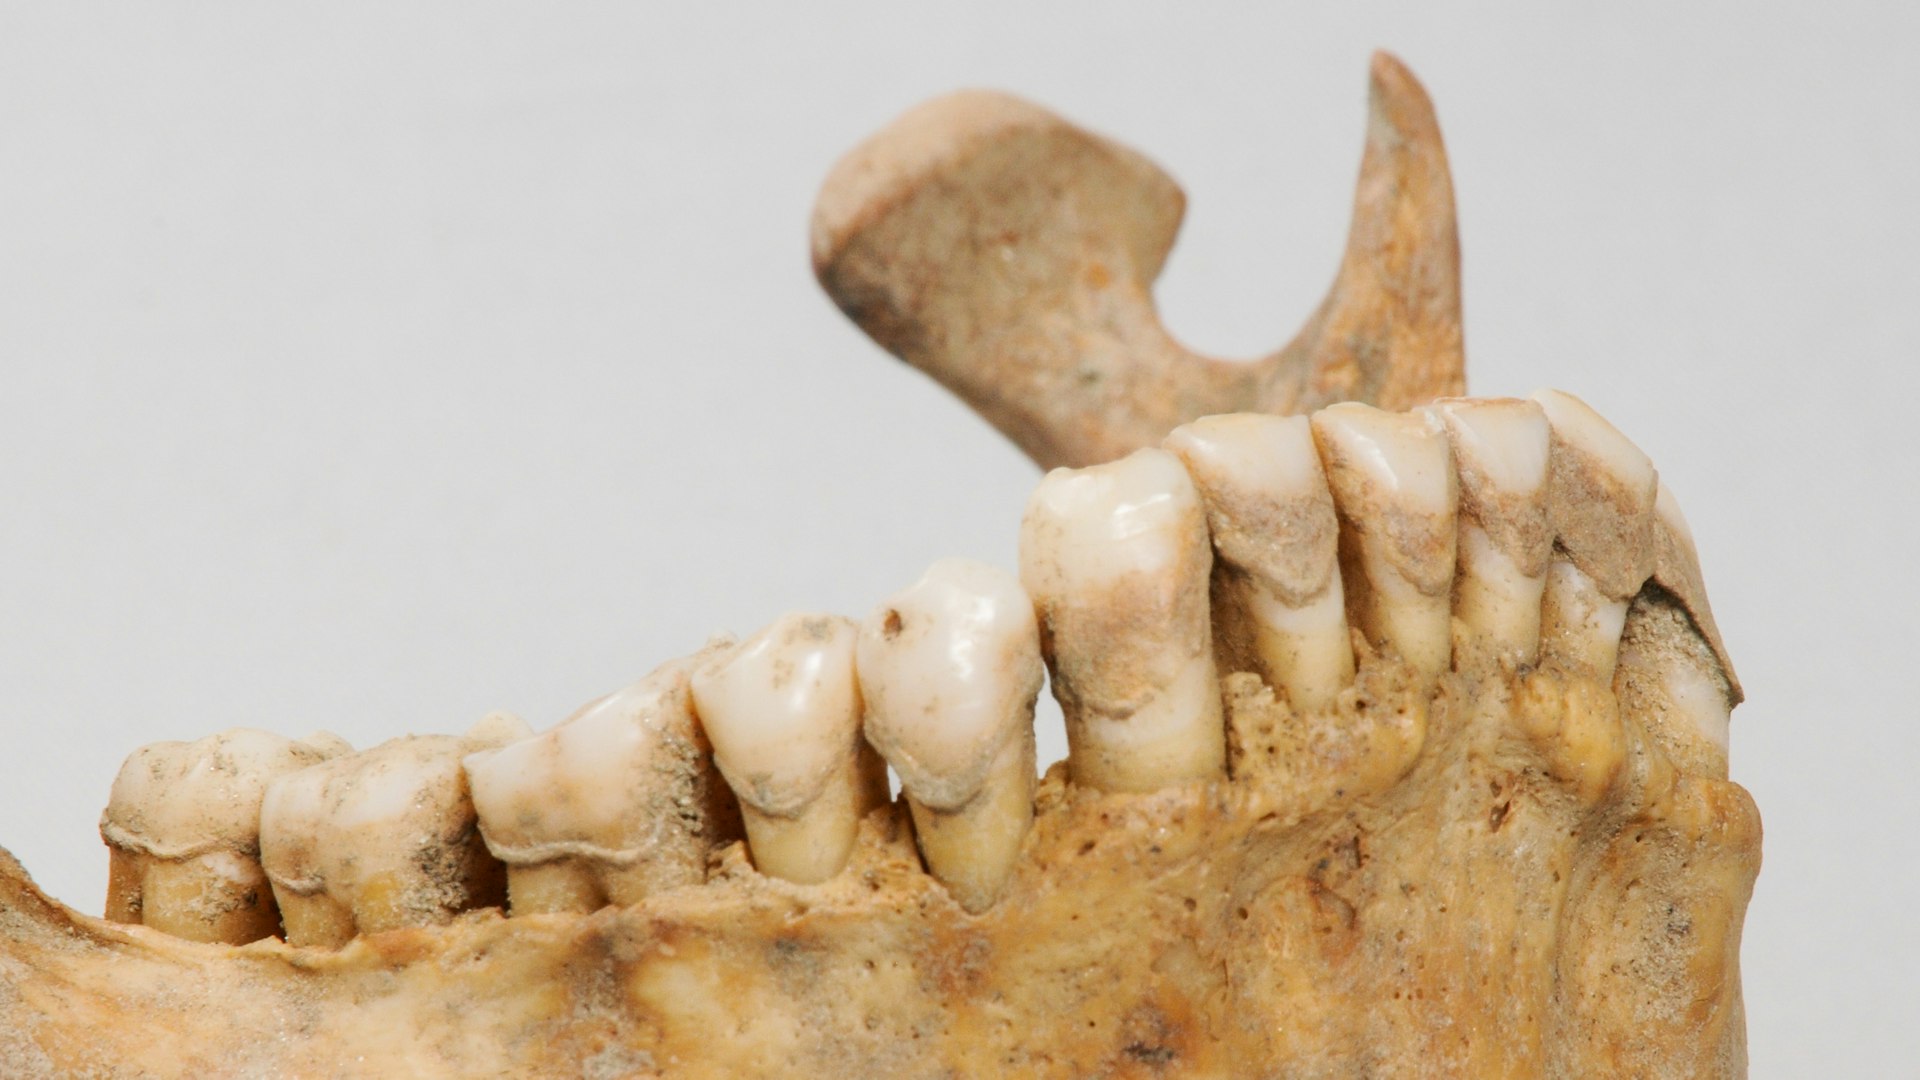 Questa immagine mostra la placca dentale di uno scheletro risalente all’Alto Medioevo